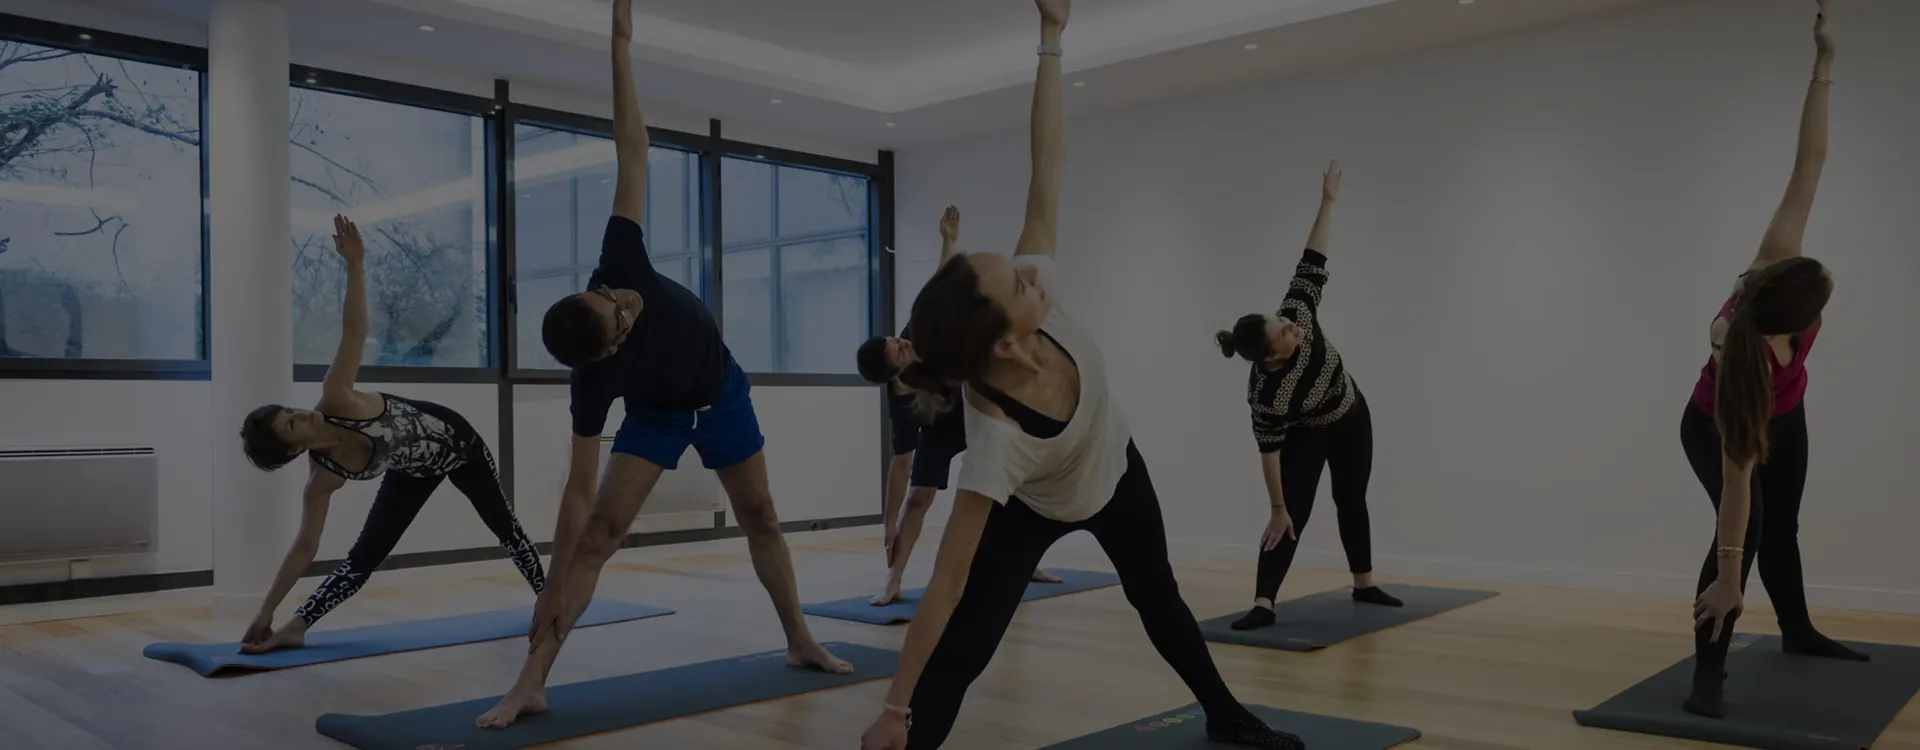 Suivre des cours de yoga, quels vertus